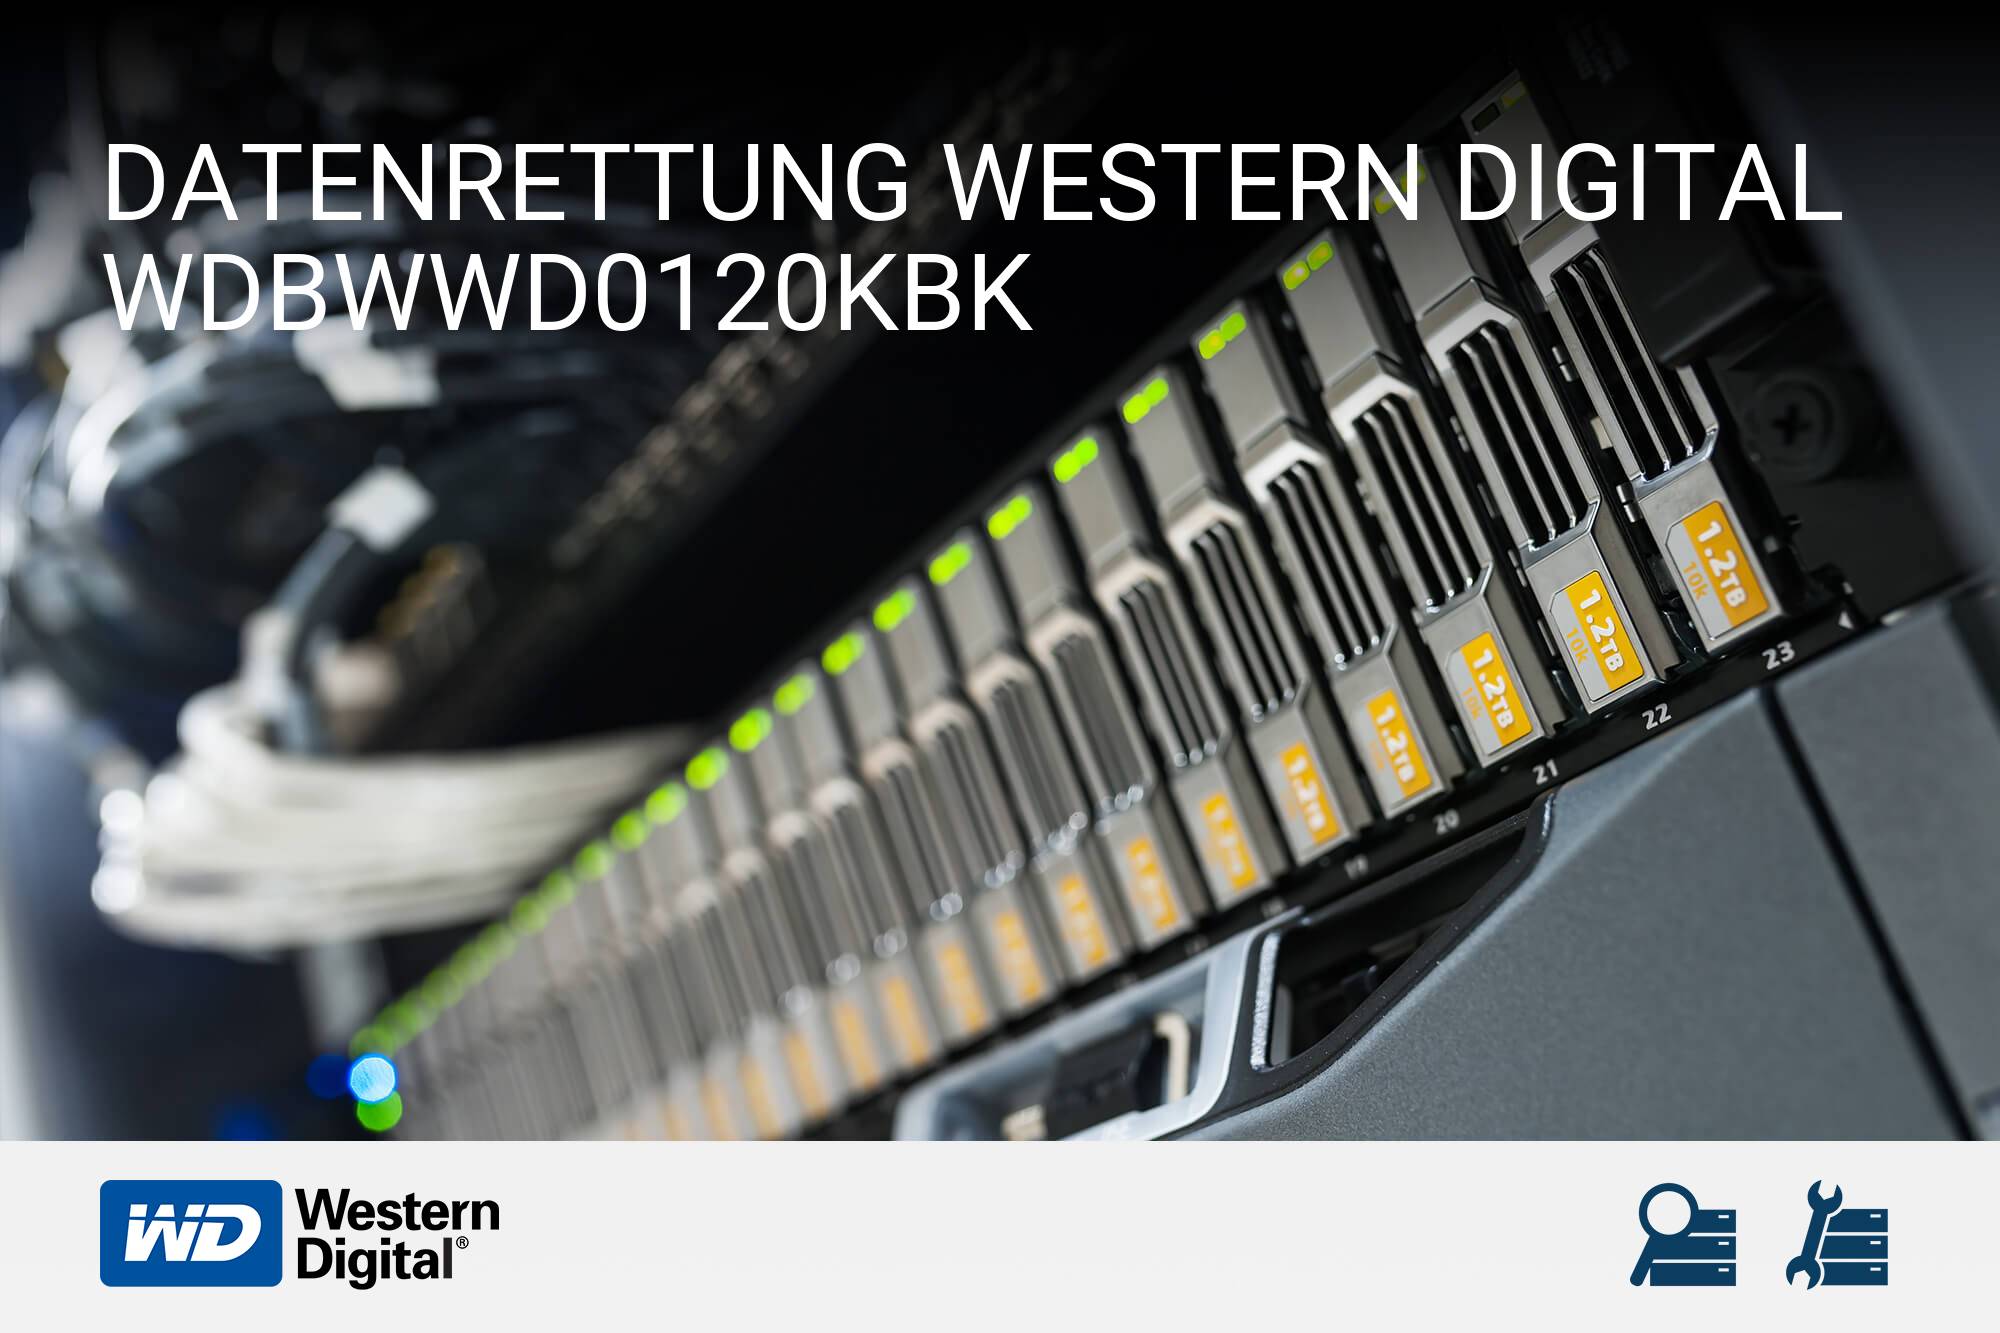 Western Digital WDBWWD0120KBK